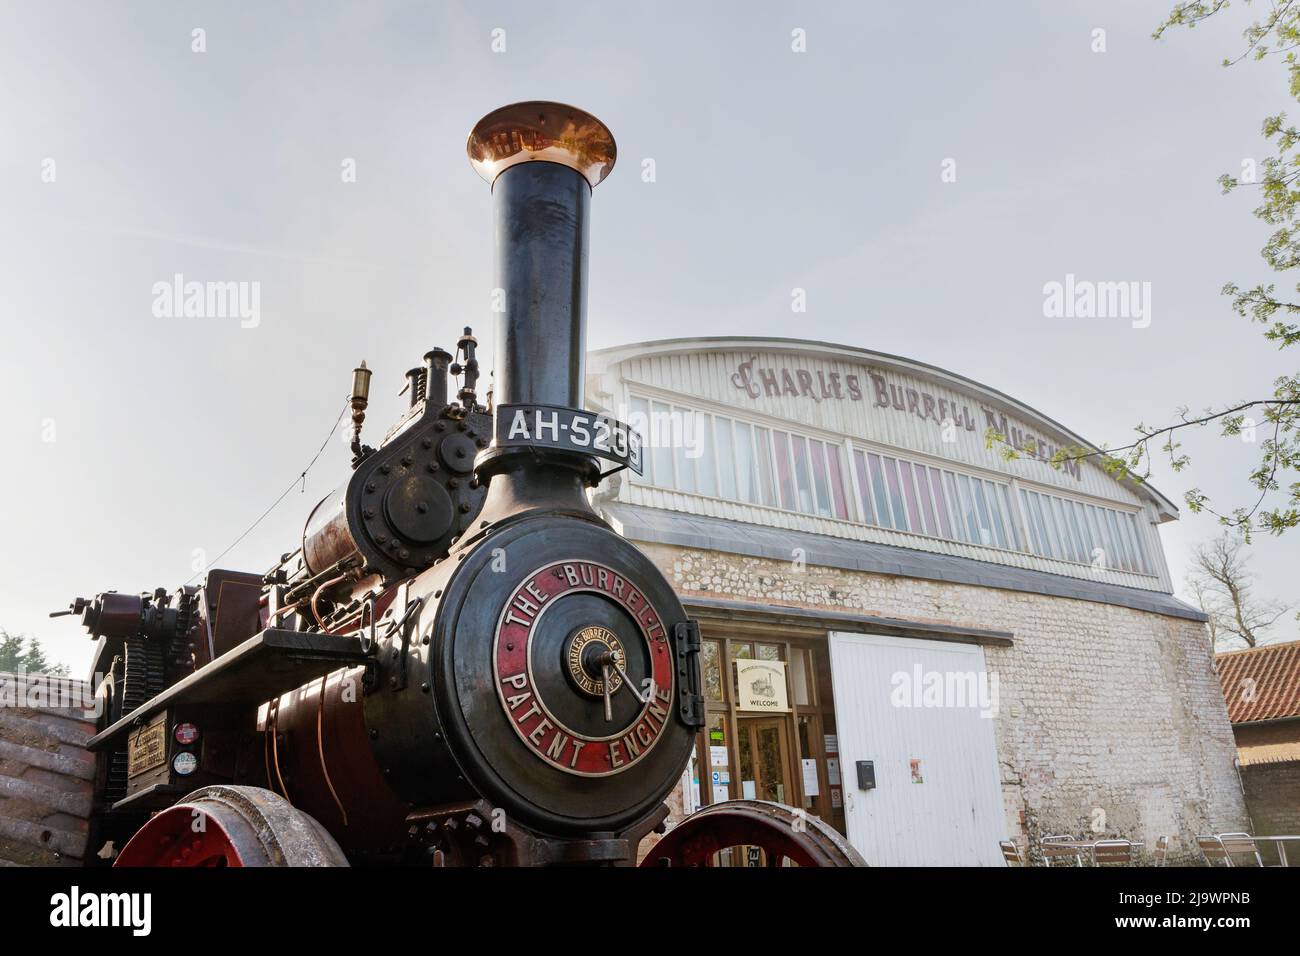 AH5239 le Burrell Patent Steam Engine est stationné à l'extérieur du musée de la vapeur de Burrell, l'ancien atelier de peinture de Charles Burrell & Sons, Thetford, Royaume-Uni. Banque D'Images